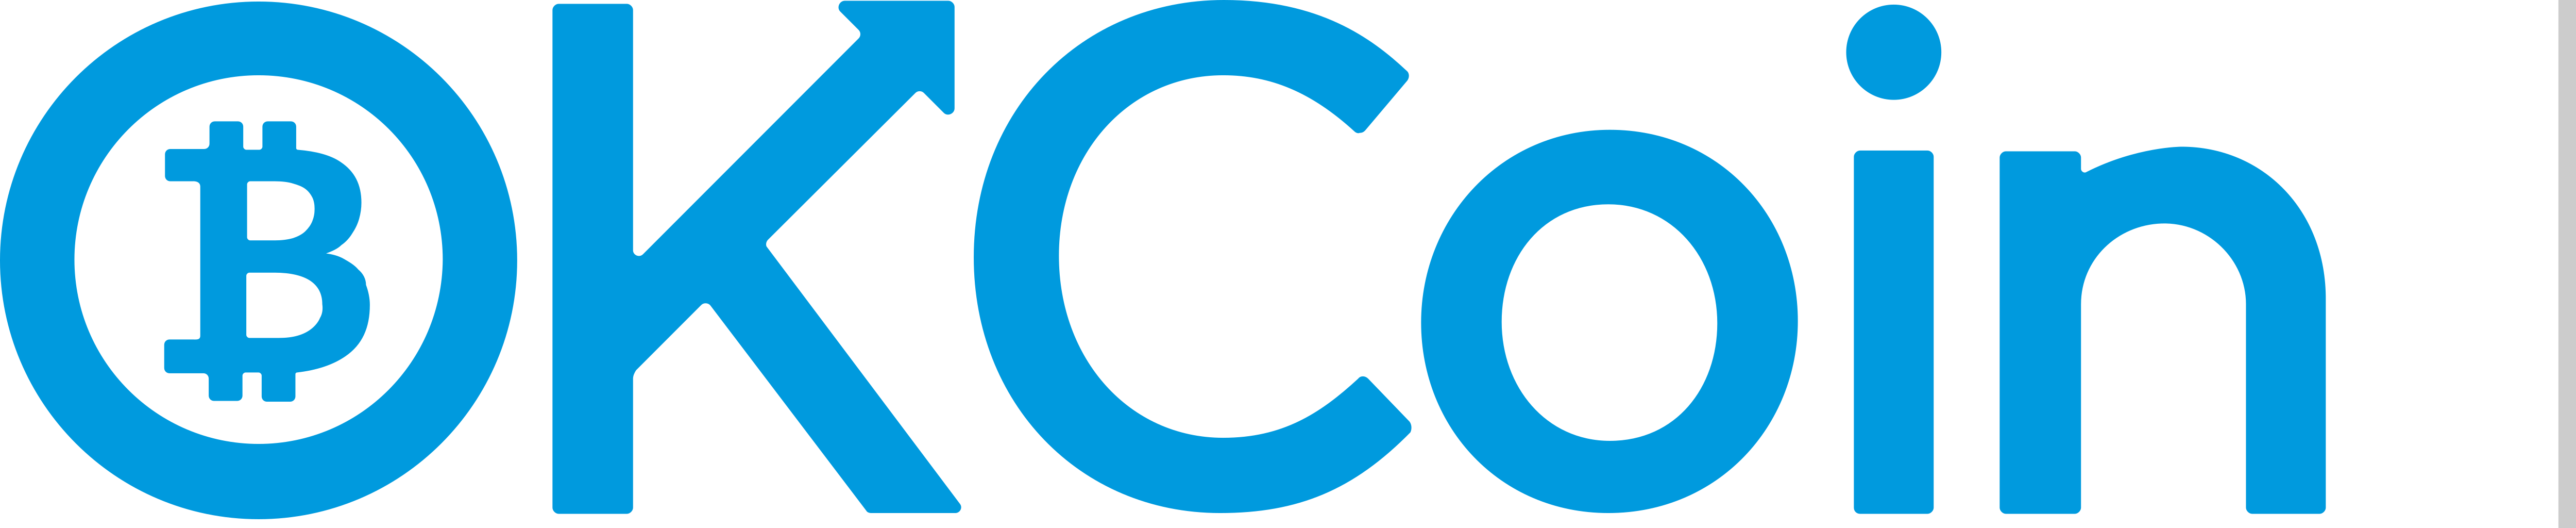 OKCoin – Logos Download